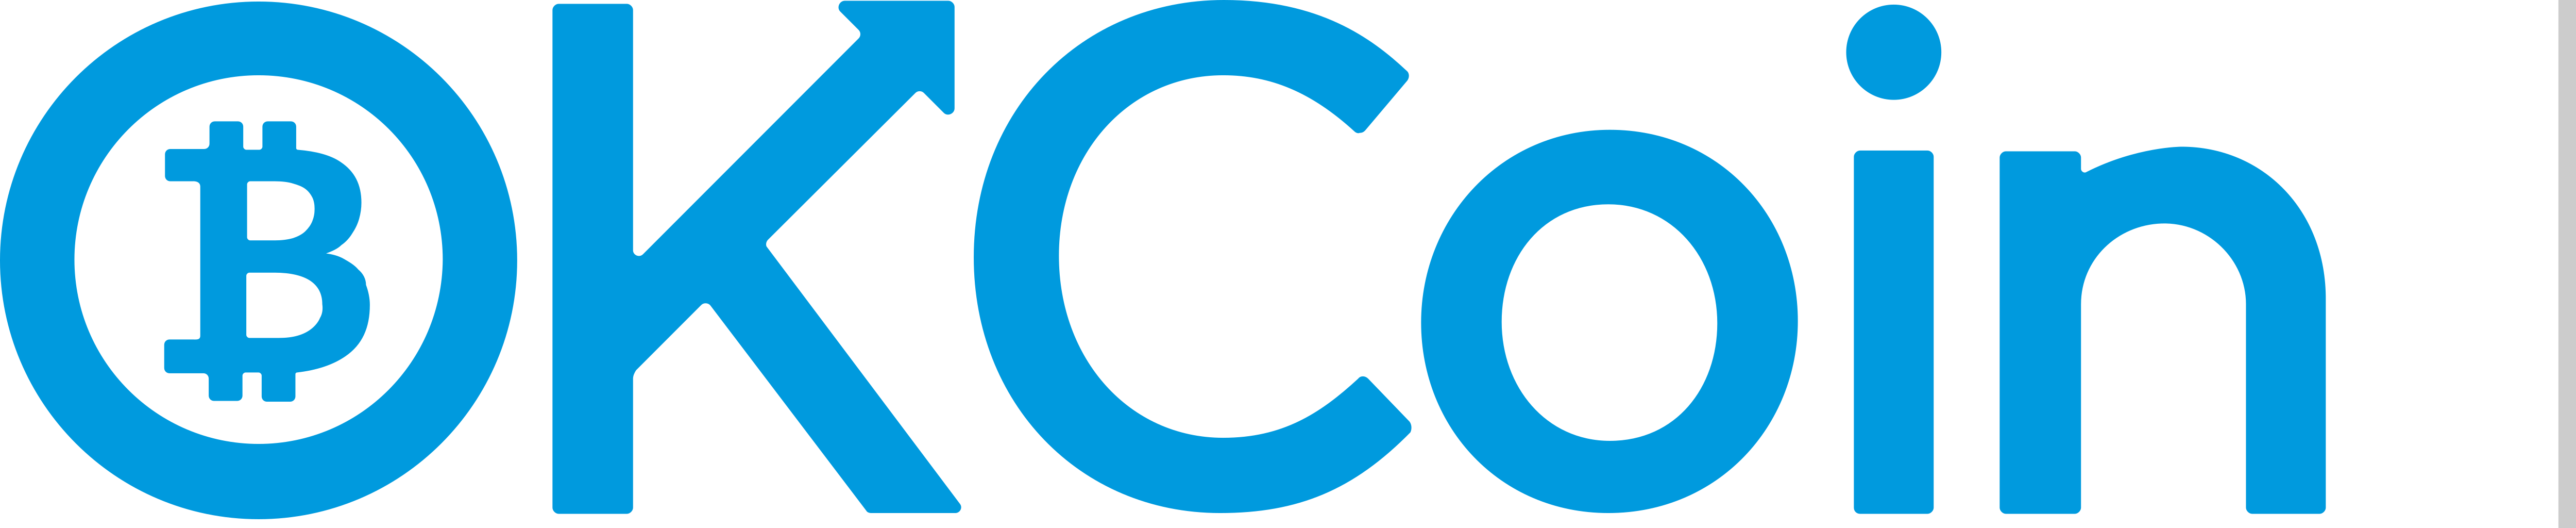 OKCoin – Logos Download